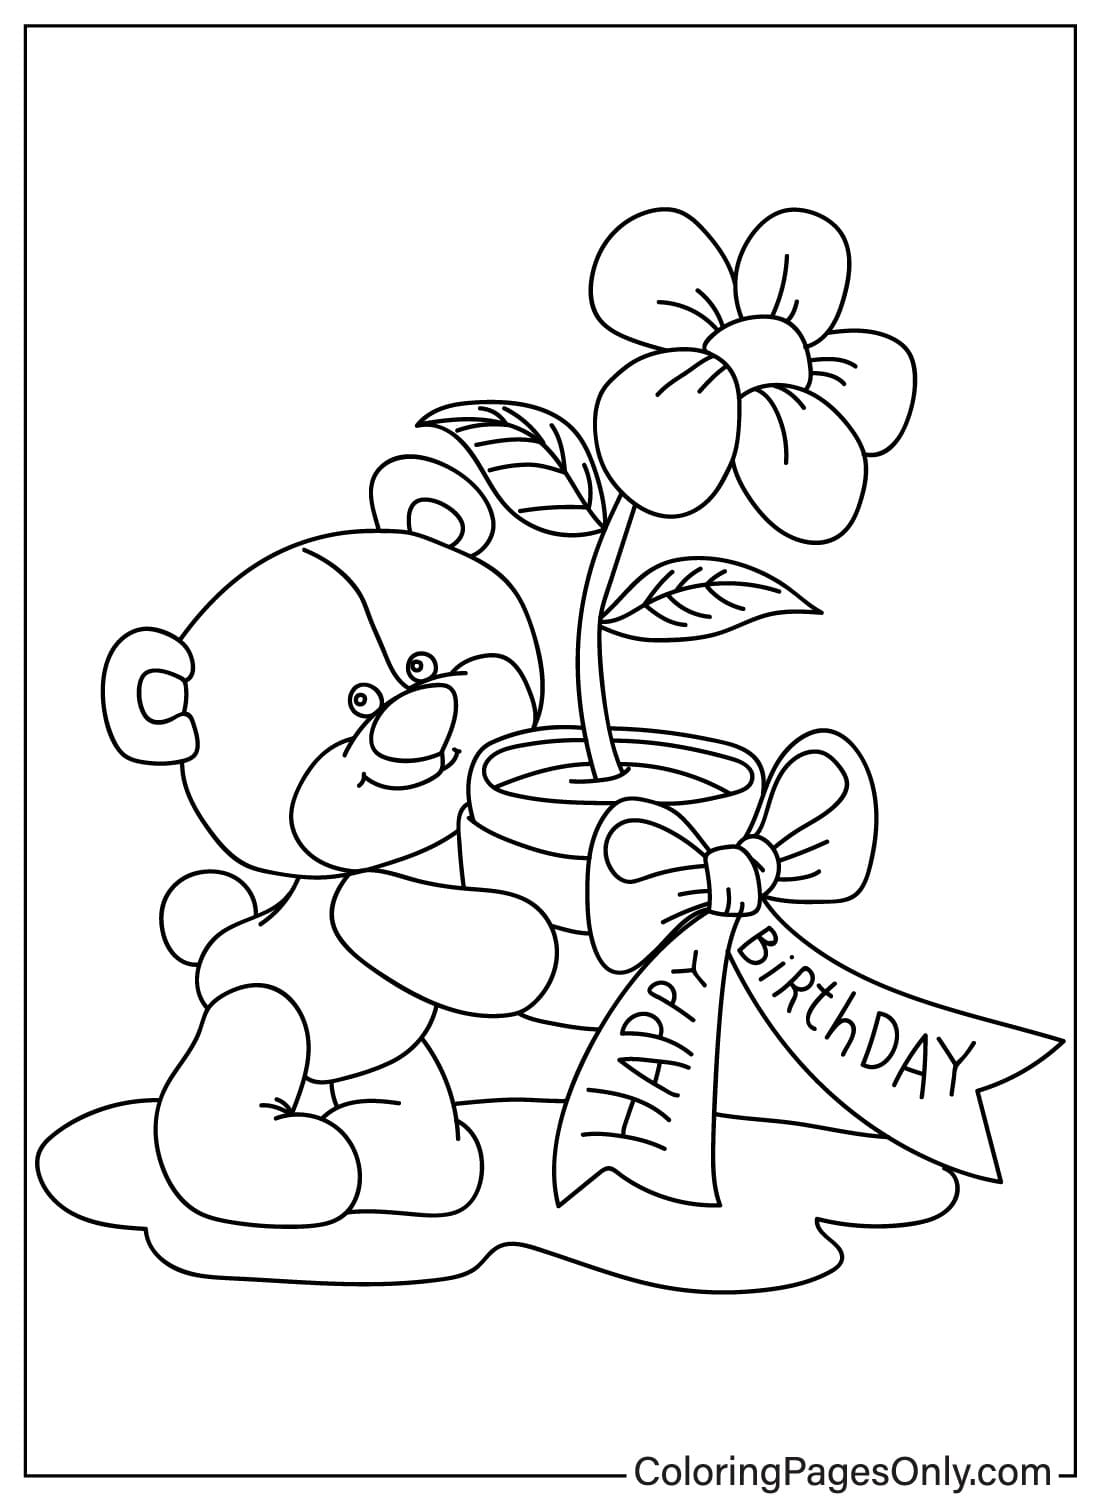 Раскраска Мишка Тедди от Teddy Bear для печати бесплатно